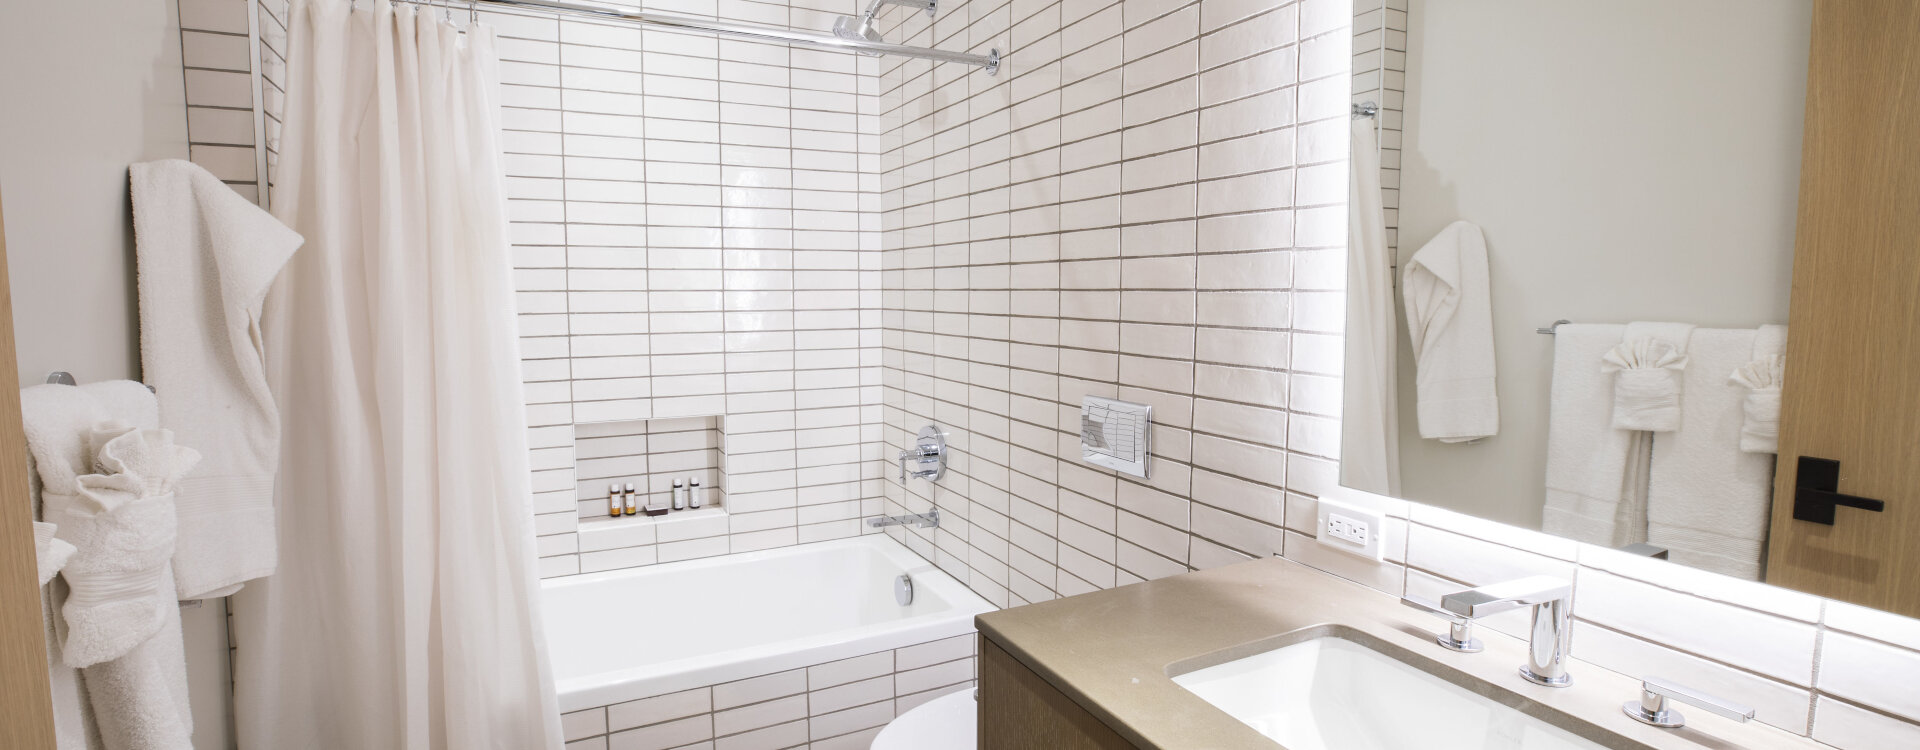 1.35-telluride-Alpenblick-Bunk-Room-Bathroom